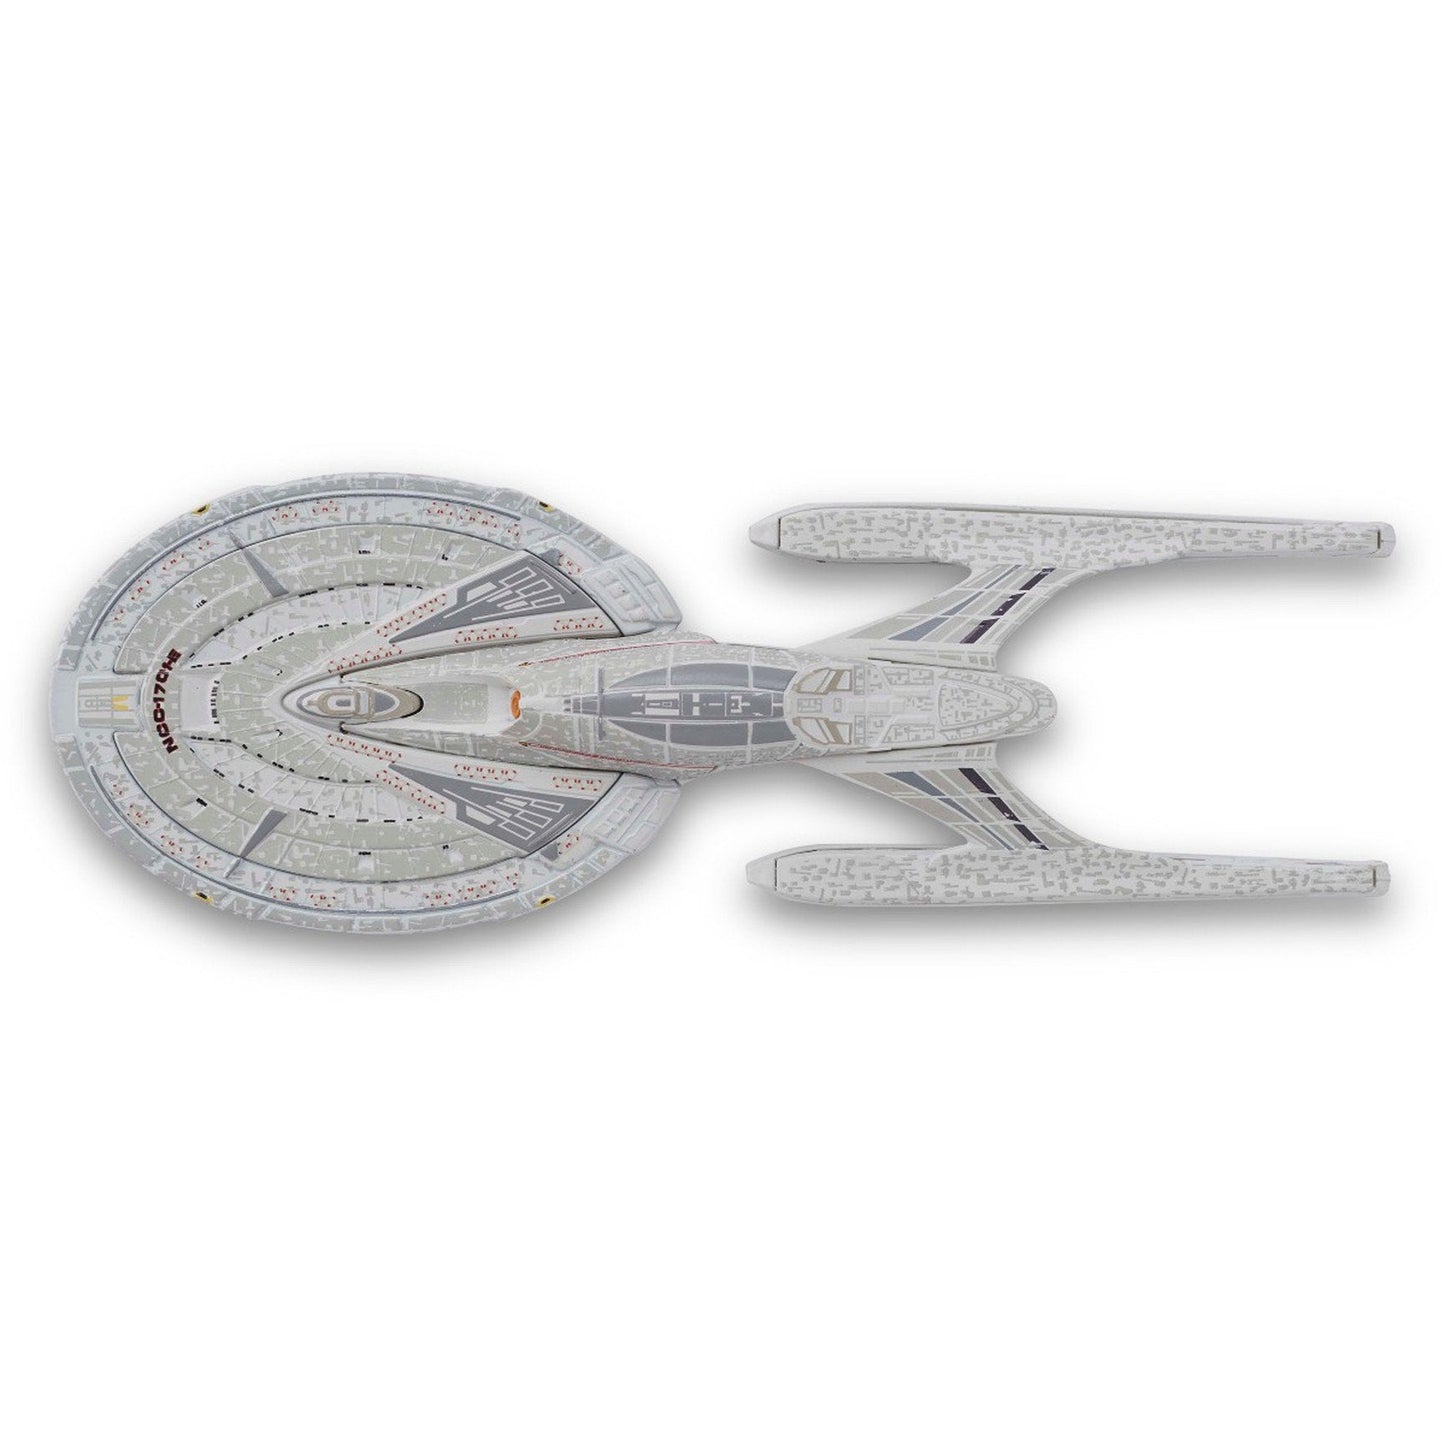 Star Trek Starship Collection USS Enterprise NCC-1701-E Model Eaglemoss